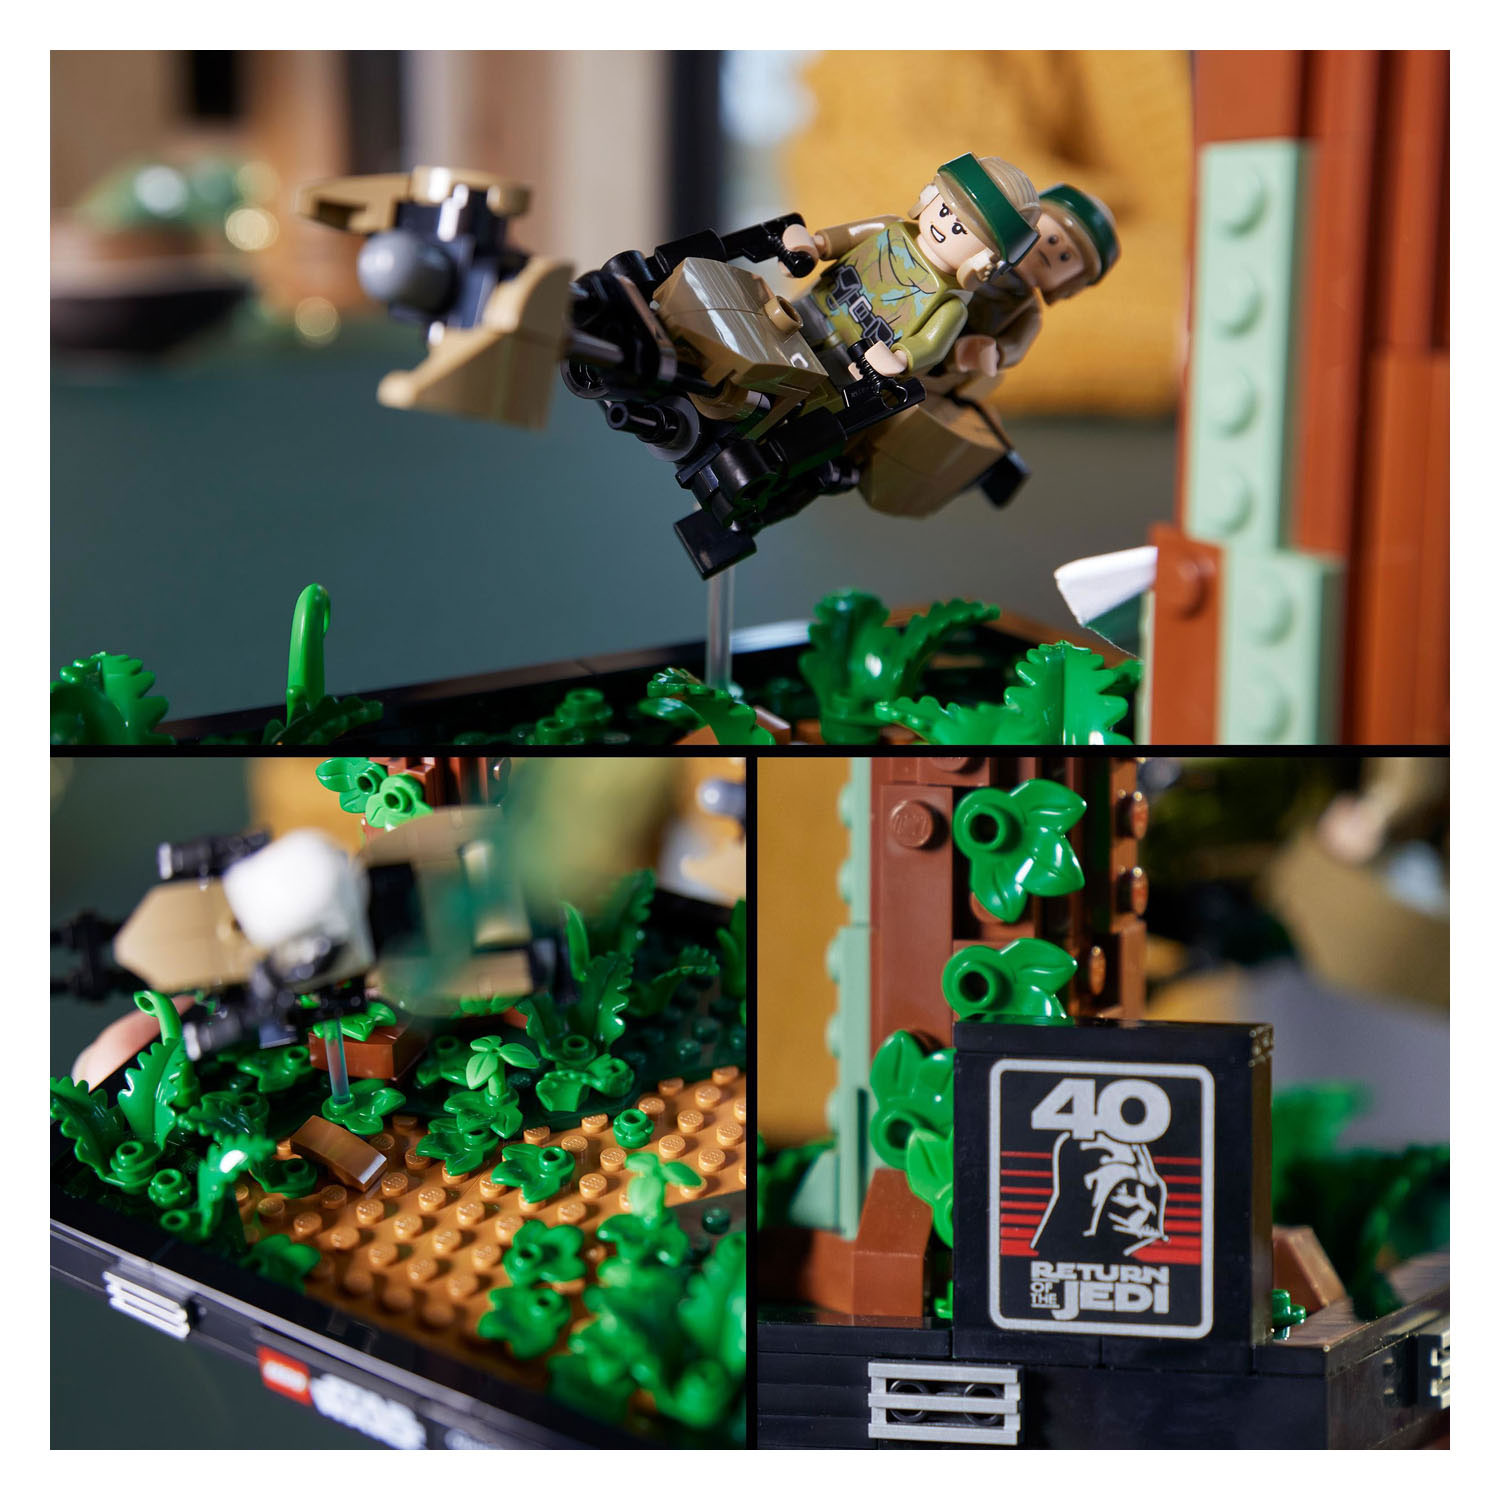 LEGO Star Wars 75353 Endor Speeder Pursuit Diorama